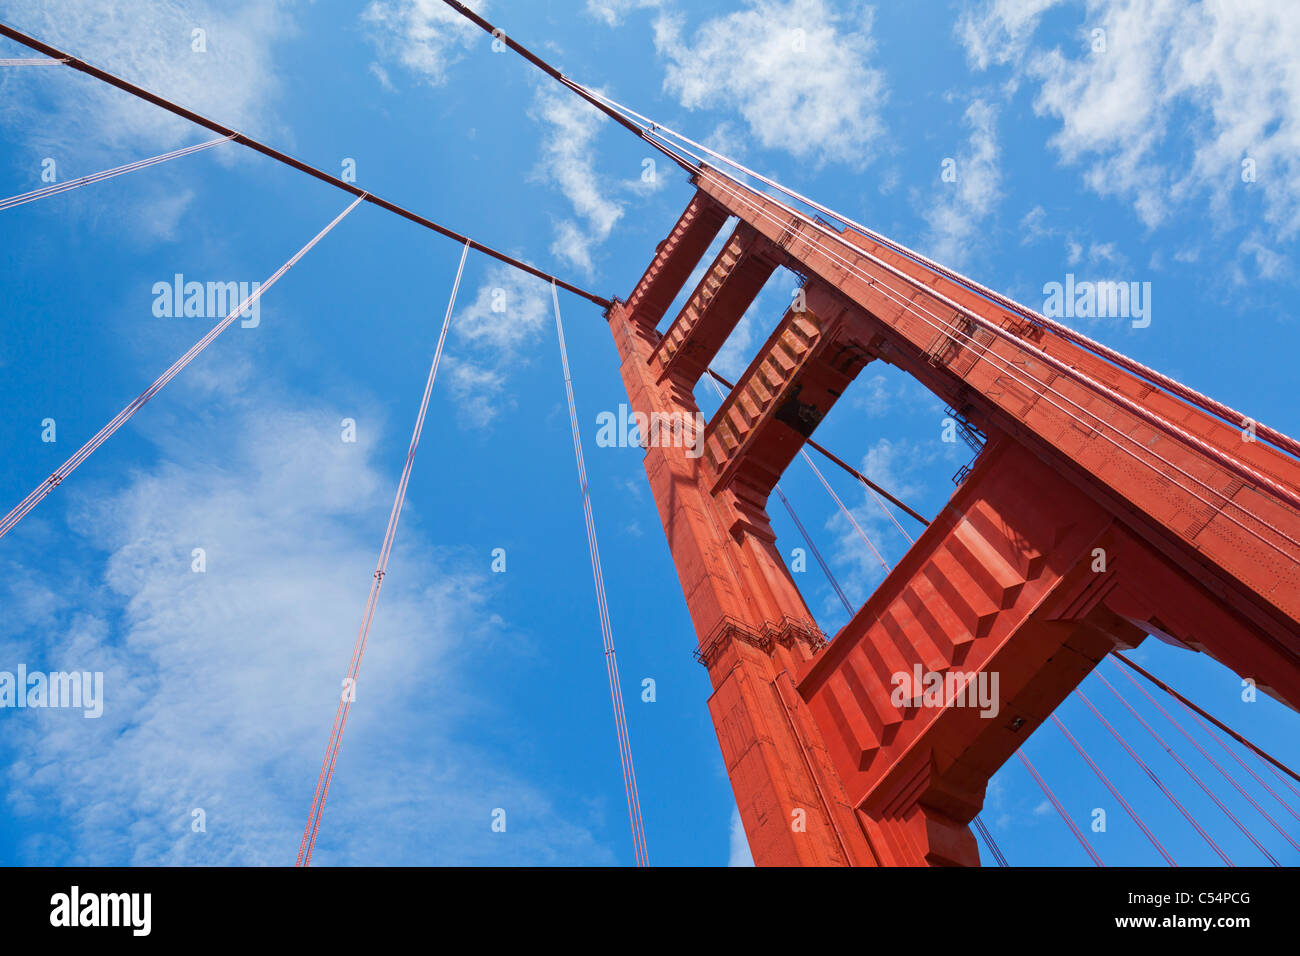 San Francisco The Golden Gate Bridge City of San Francisco California USA Stock Photo